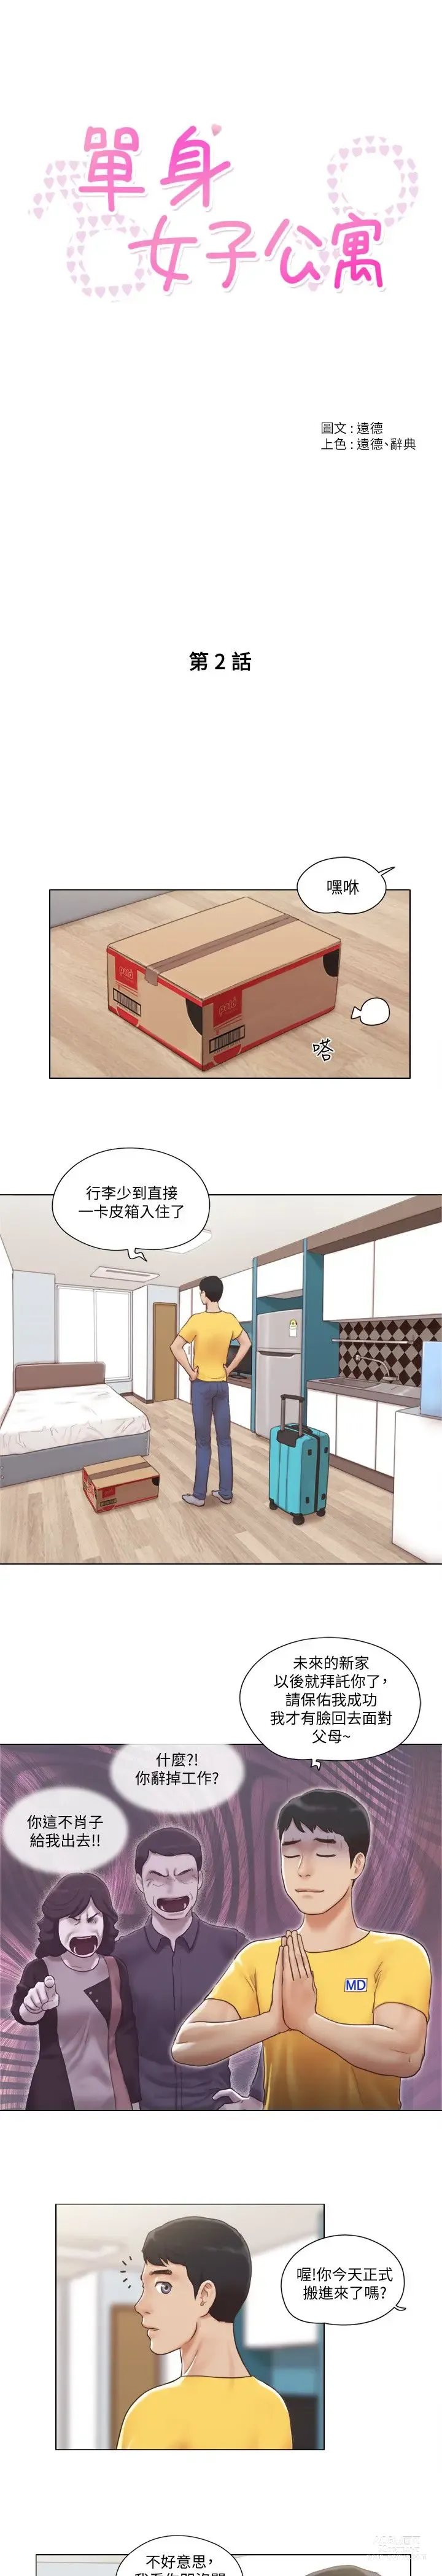 Page 28 of manga 單身女子公寓 1-41 END